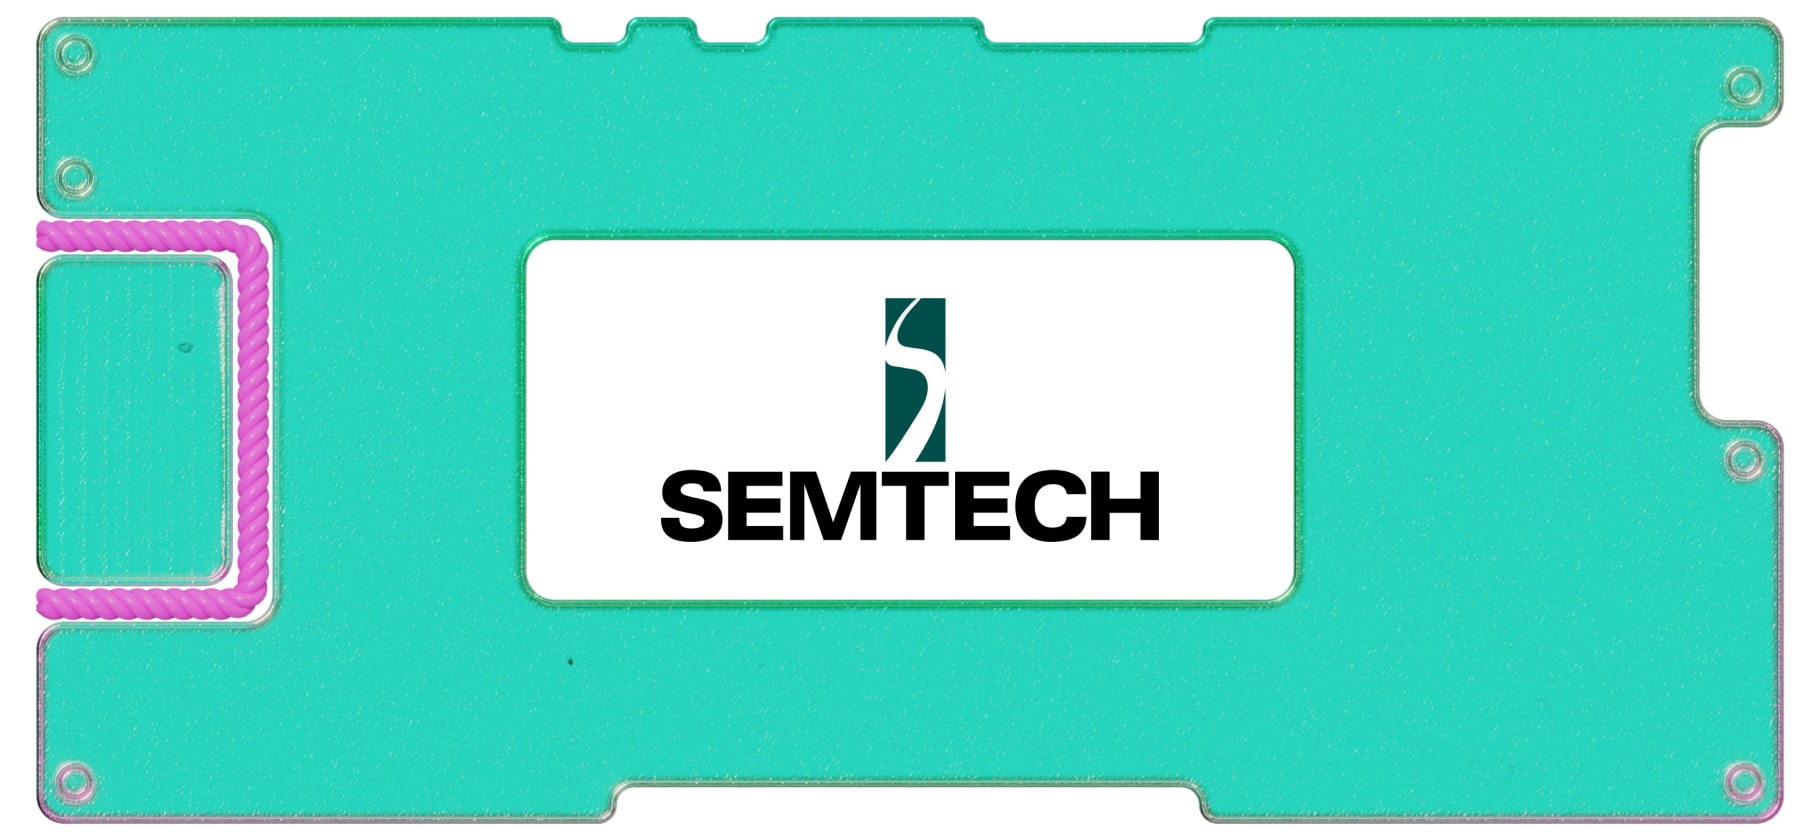 Стоит ли инвестировать в полупроводники: обзор компании Semtech